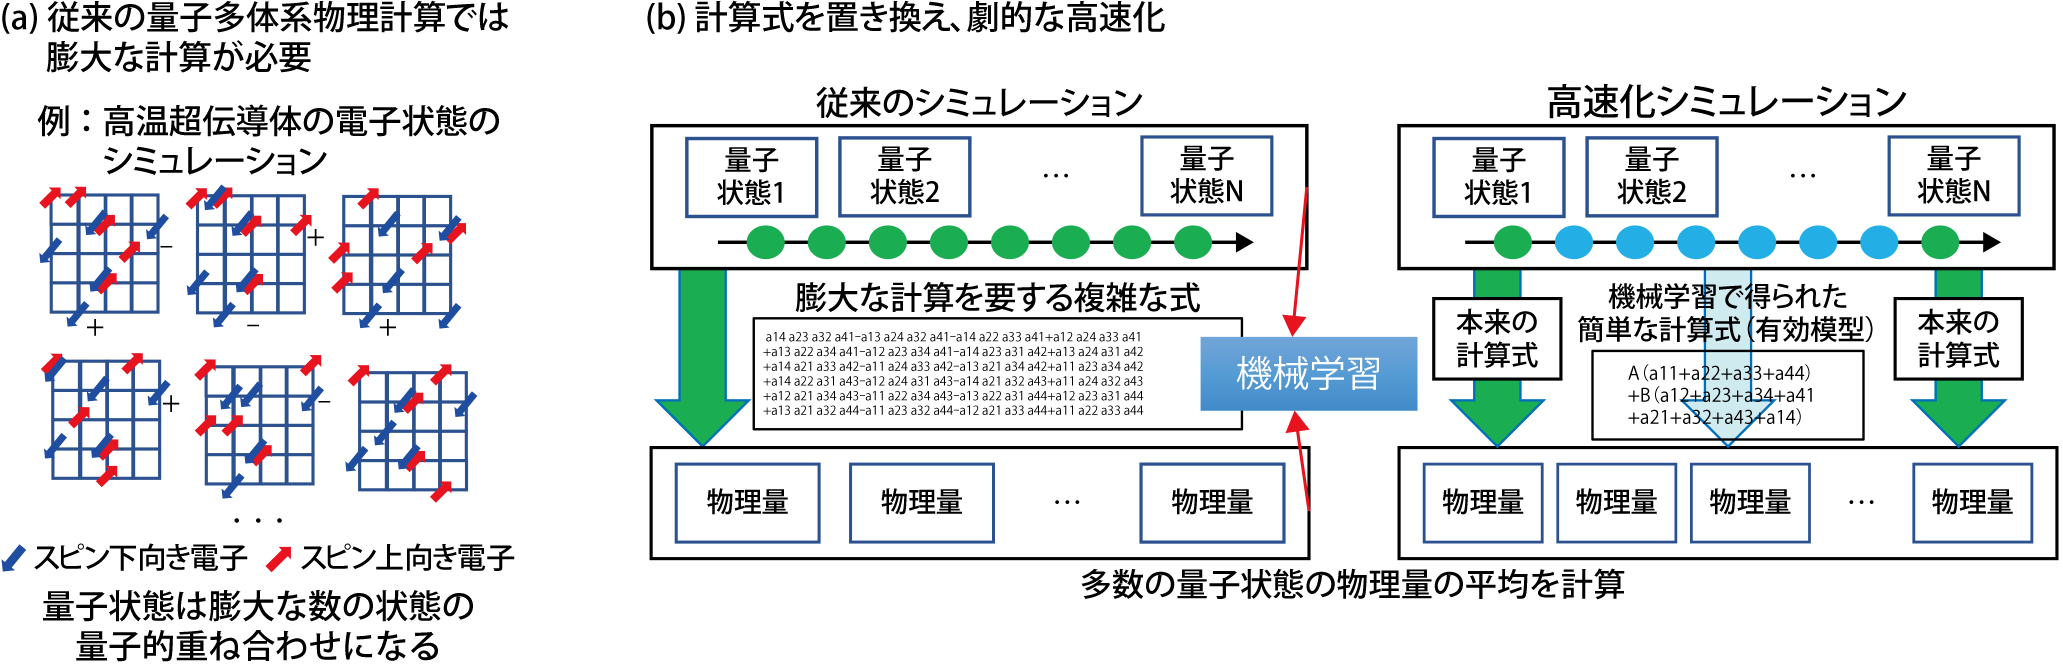 図9-2 計算手法の概略と模式図